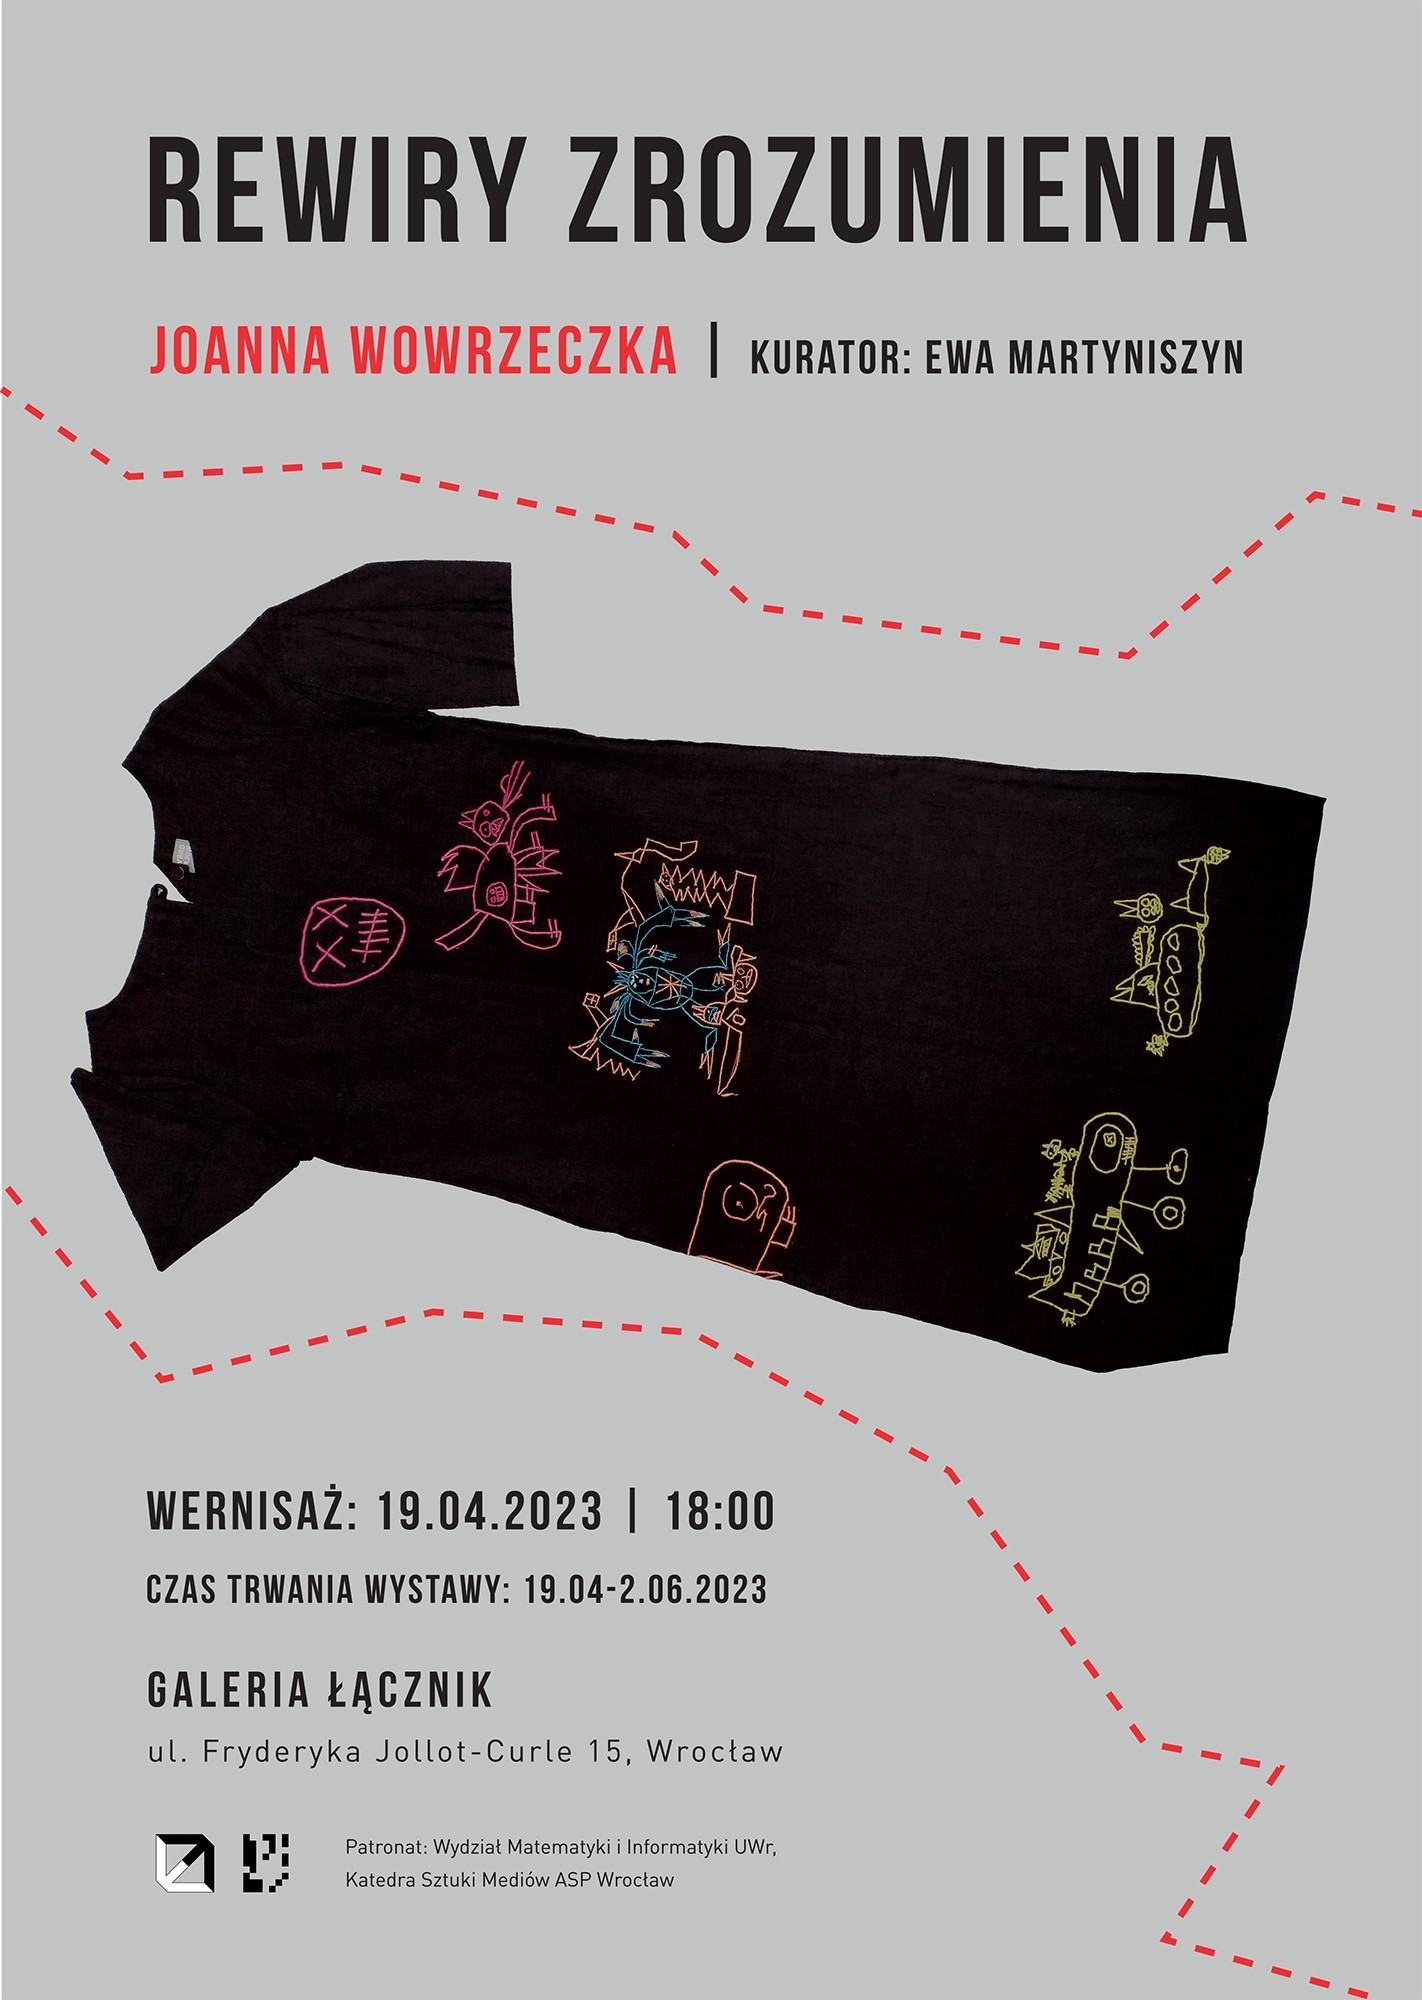 Plakat promujący wystawę obiektów Joanny Wowrzeczki pt. „Rewiry zrozumienia